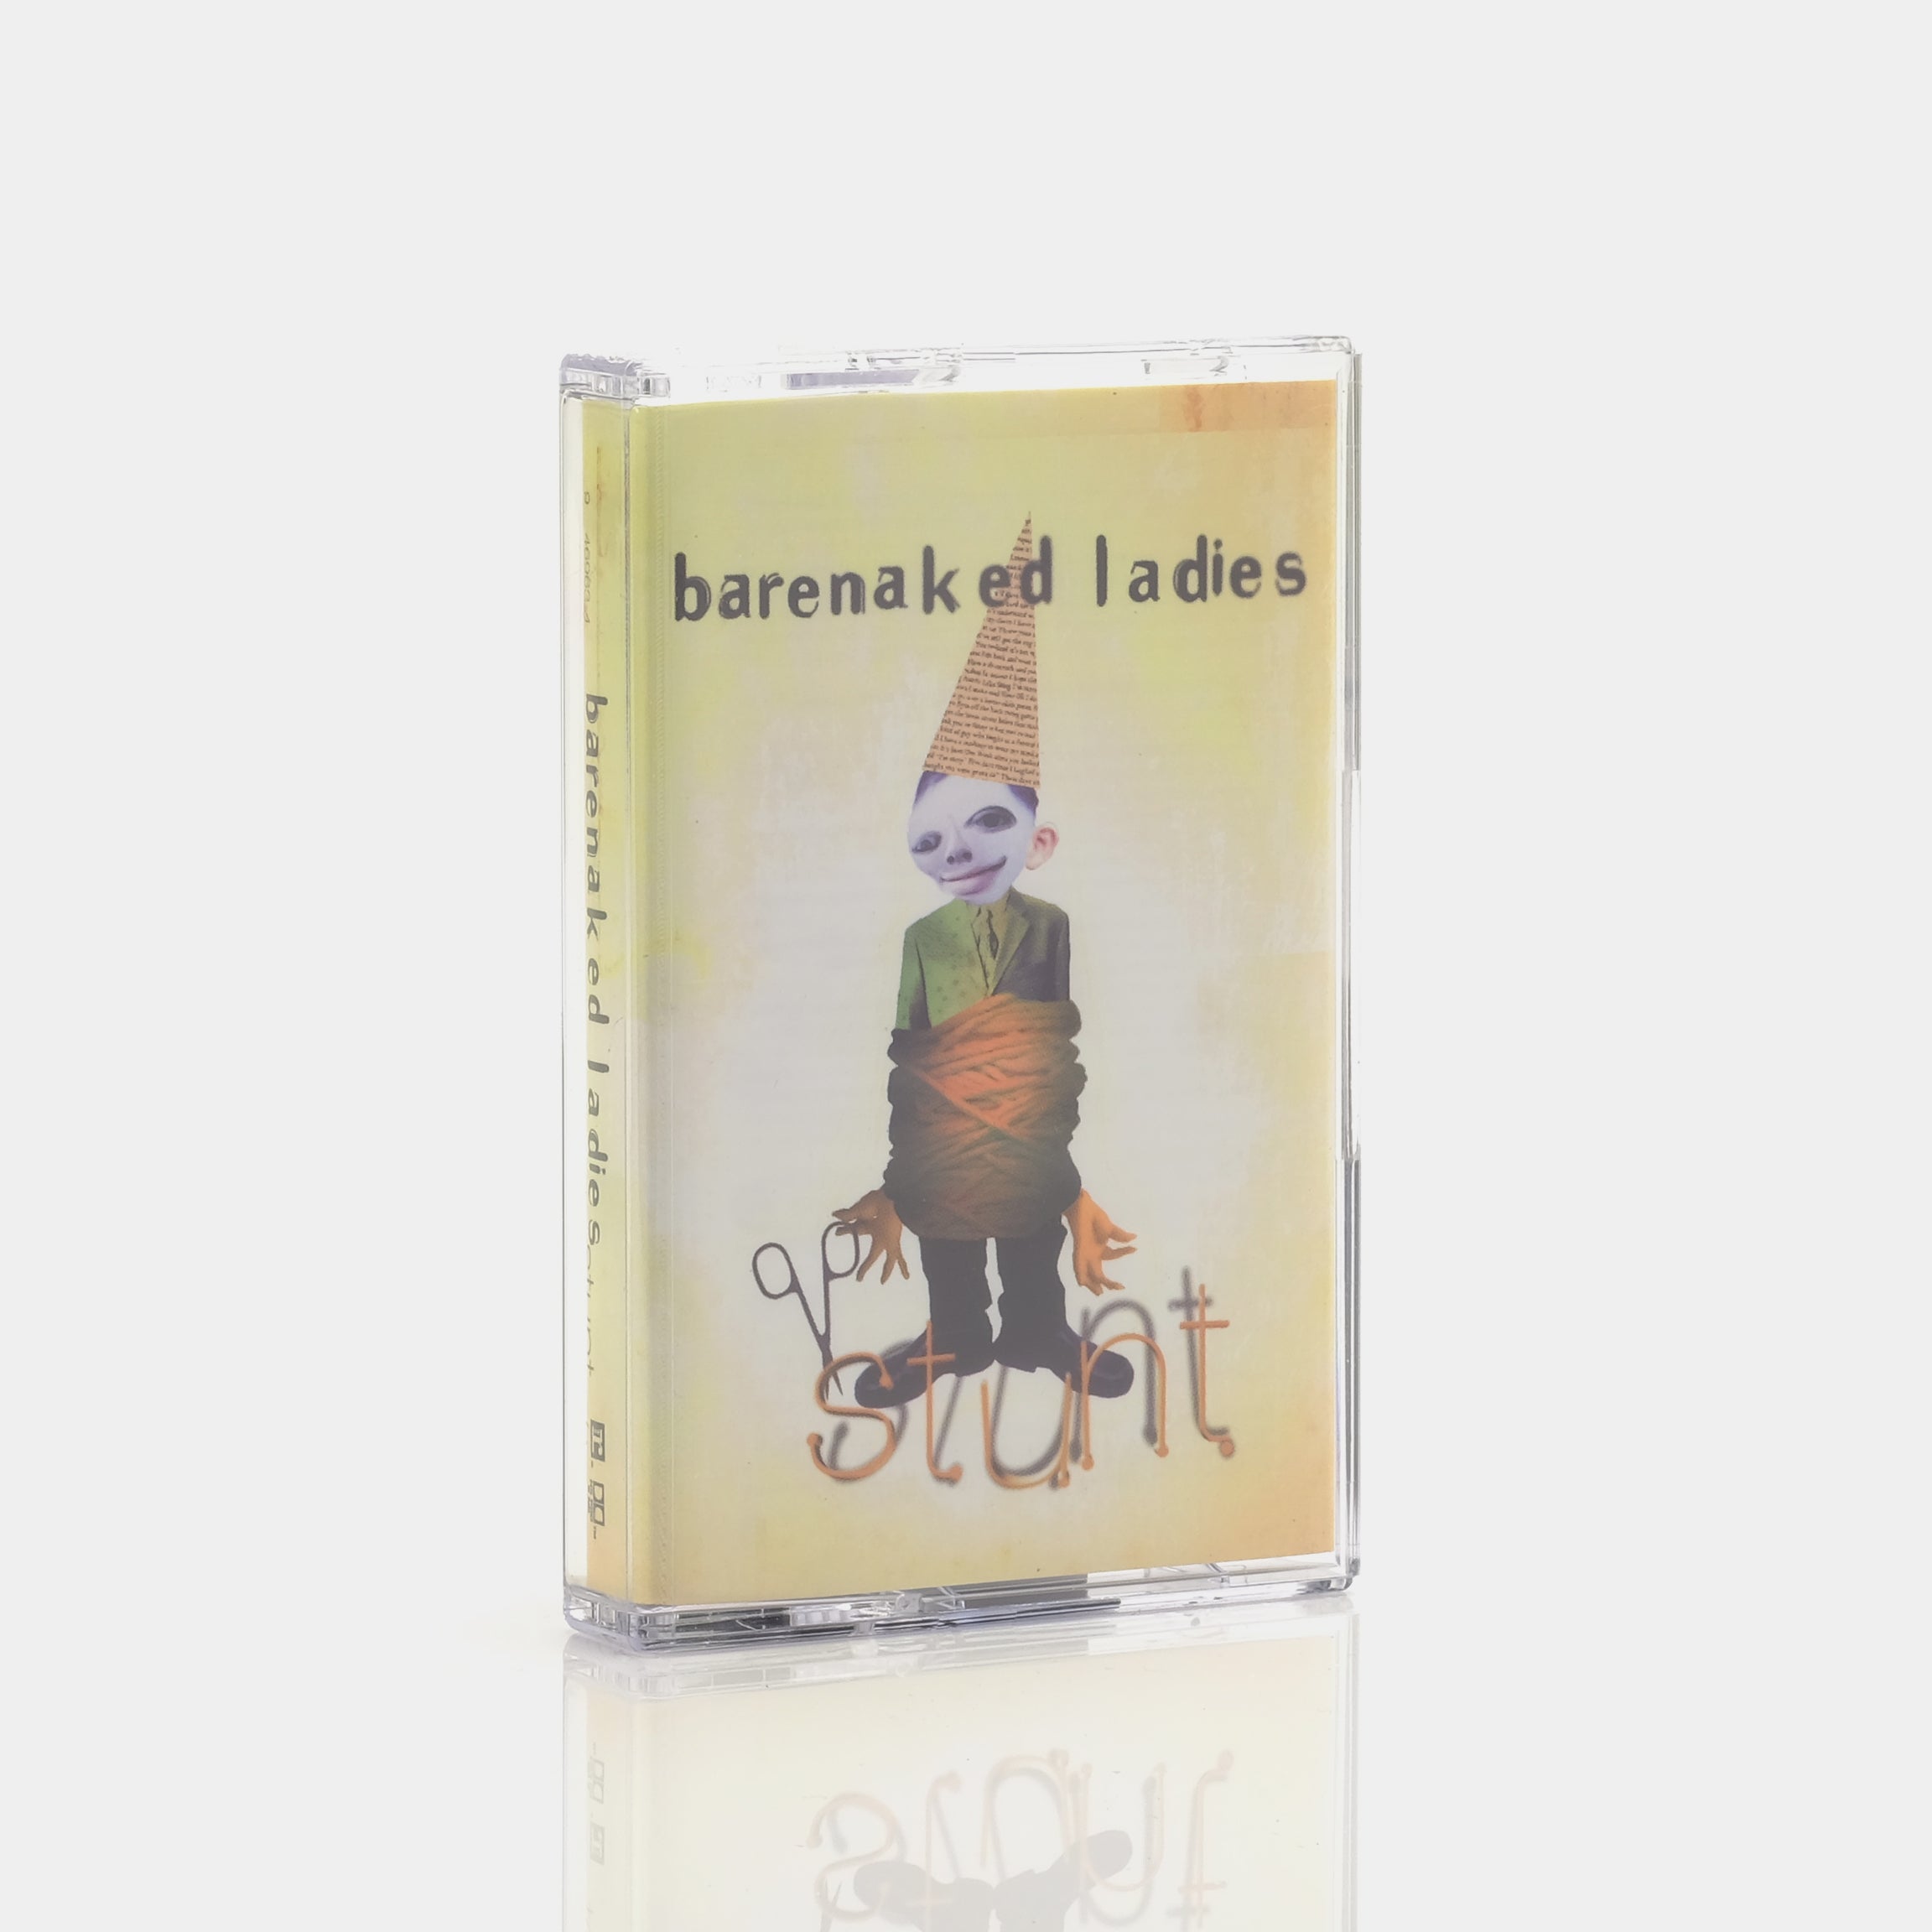 Barenaked Ladies - Stunt Cassette Tape